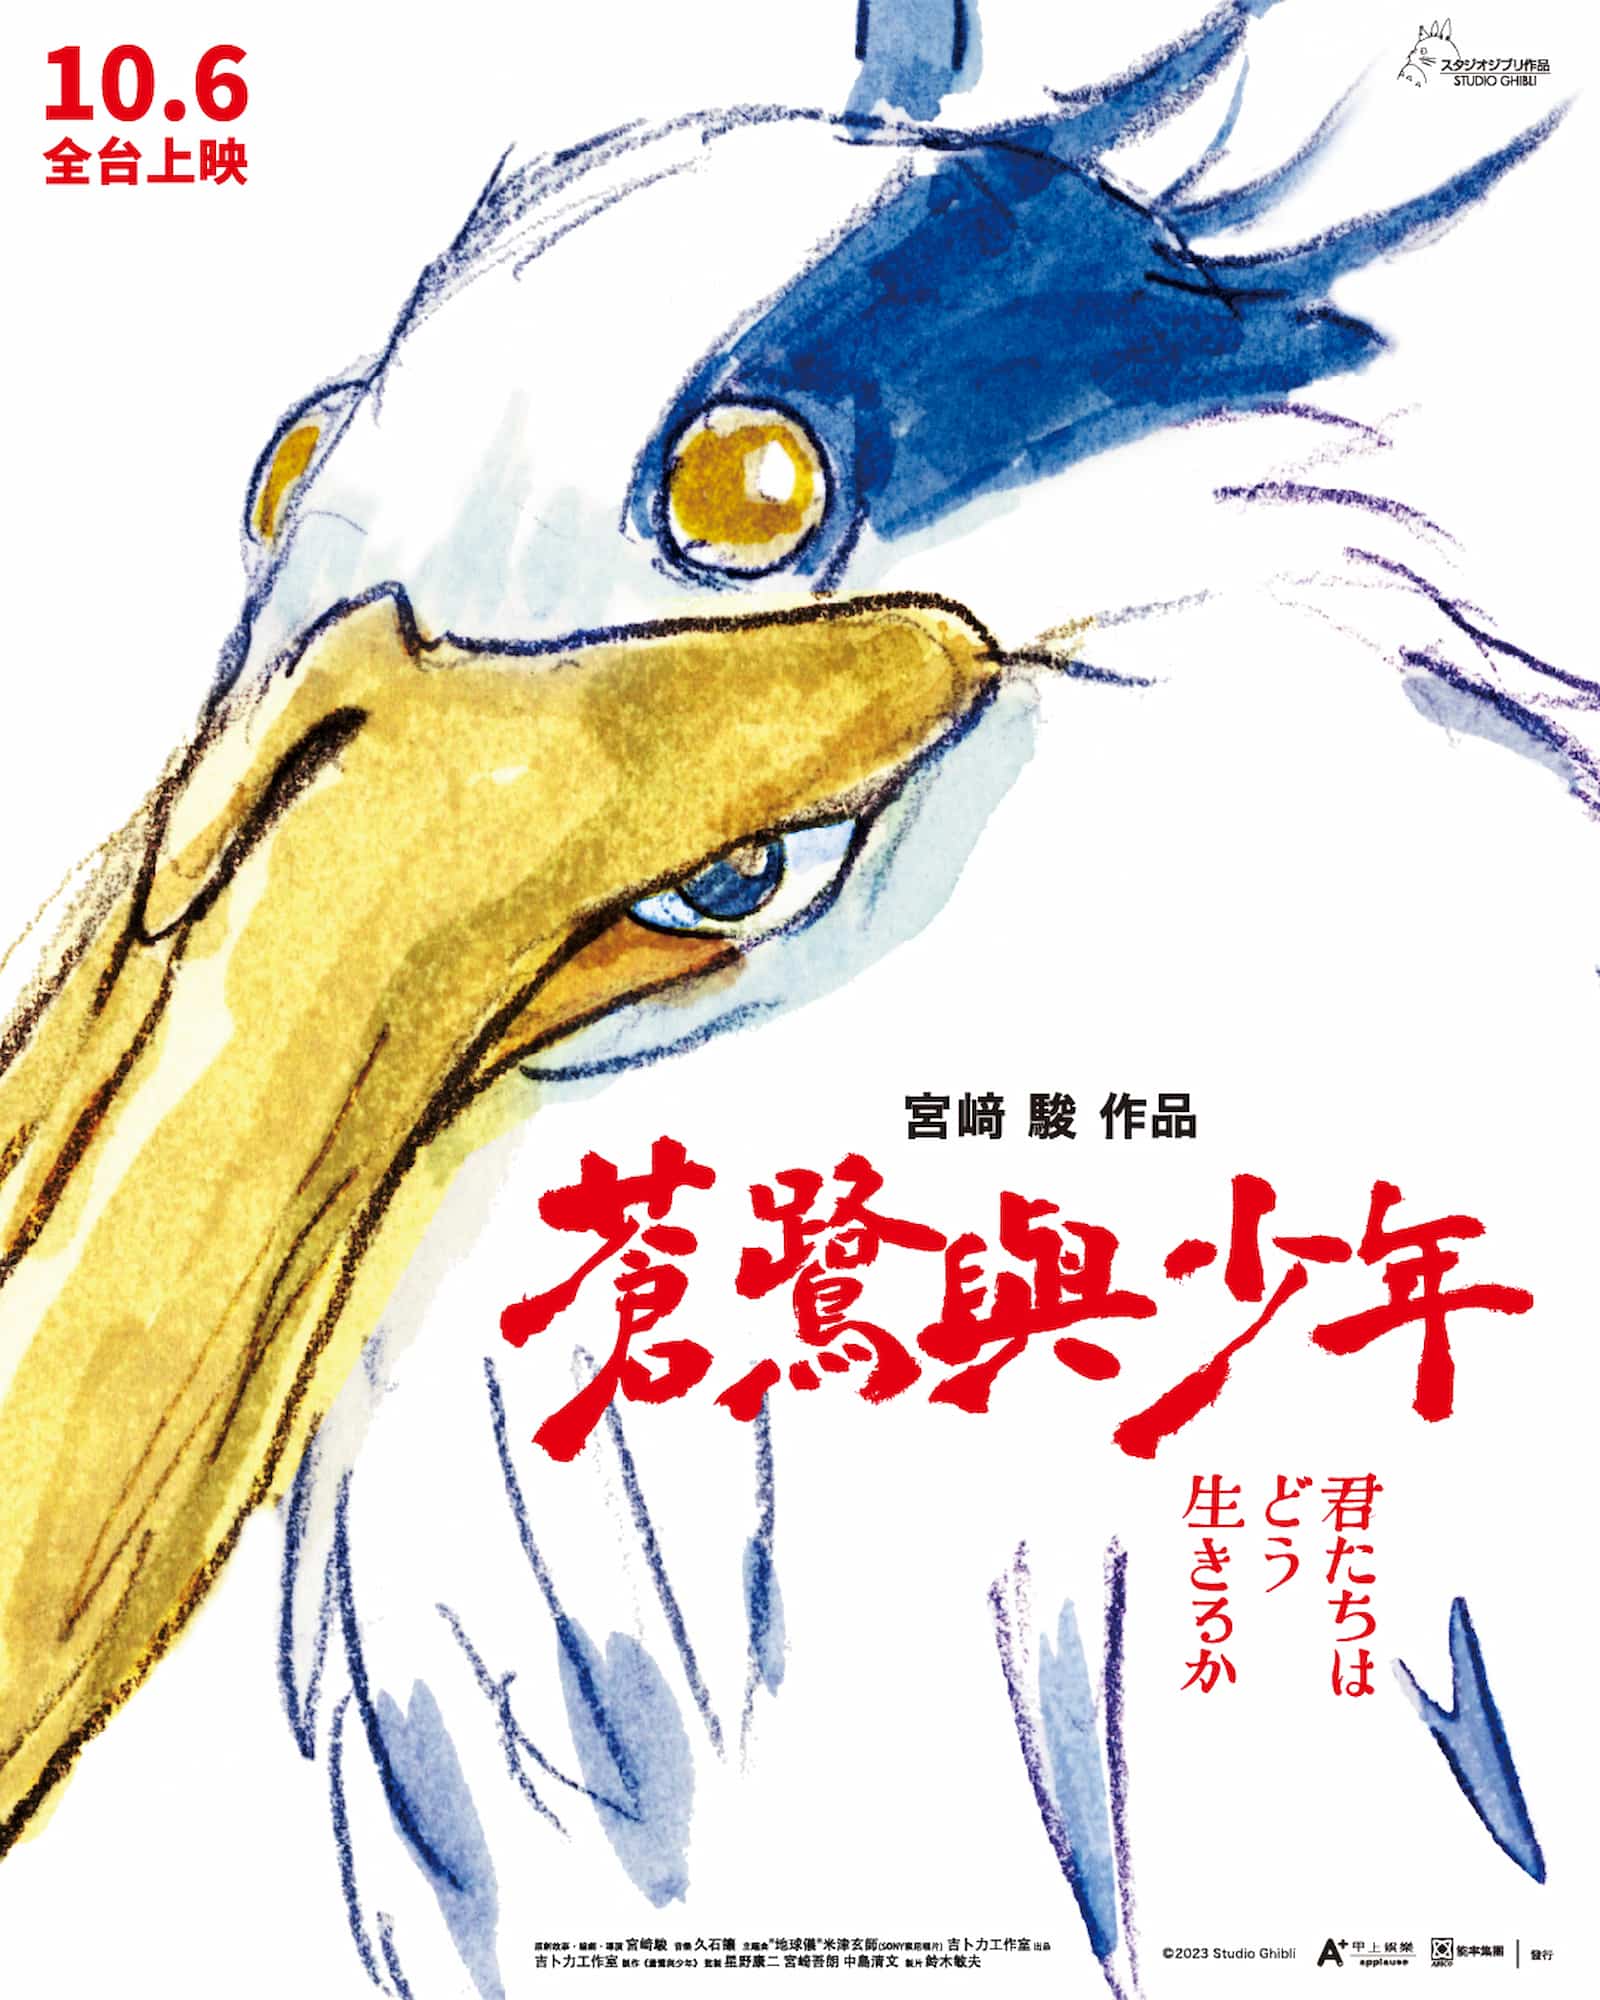 吉卜力幕後推手鈴木敏夫親筆題字《蒼鷺與少年》，作品署名是宮「﨑」駿。圖／甲上娛樂提供
